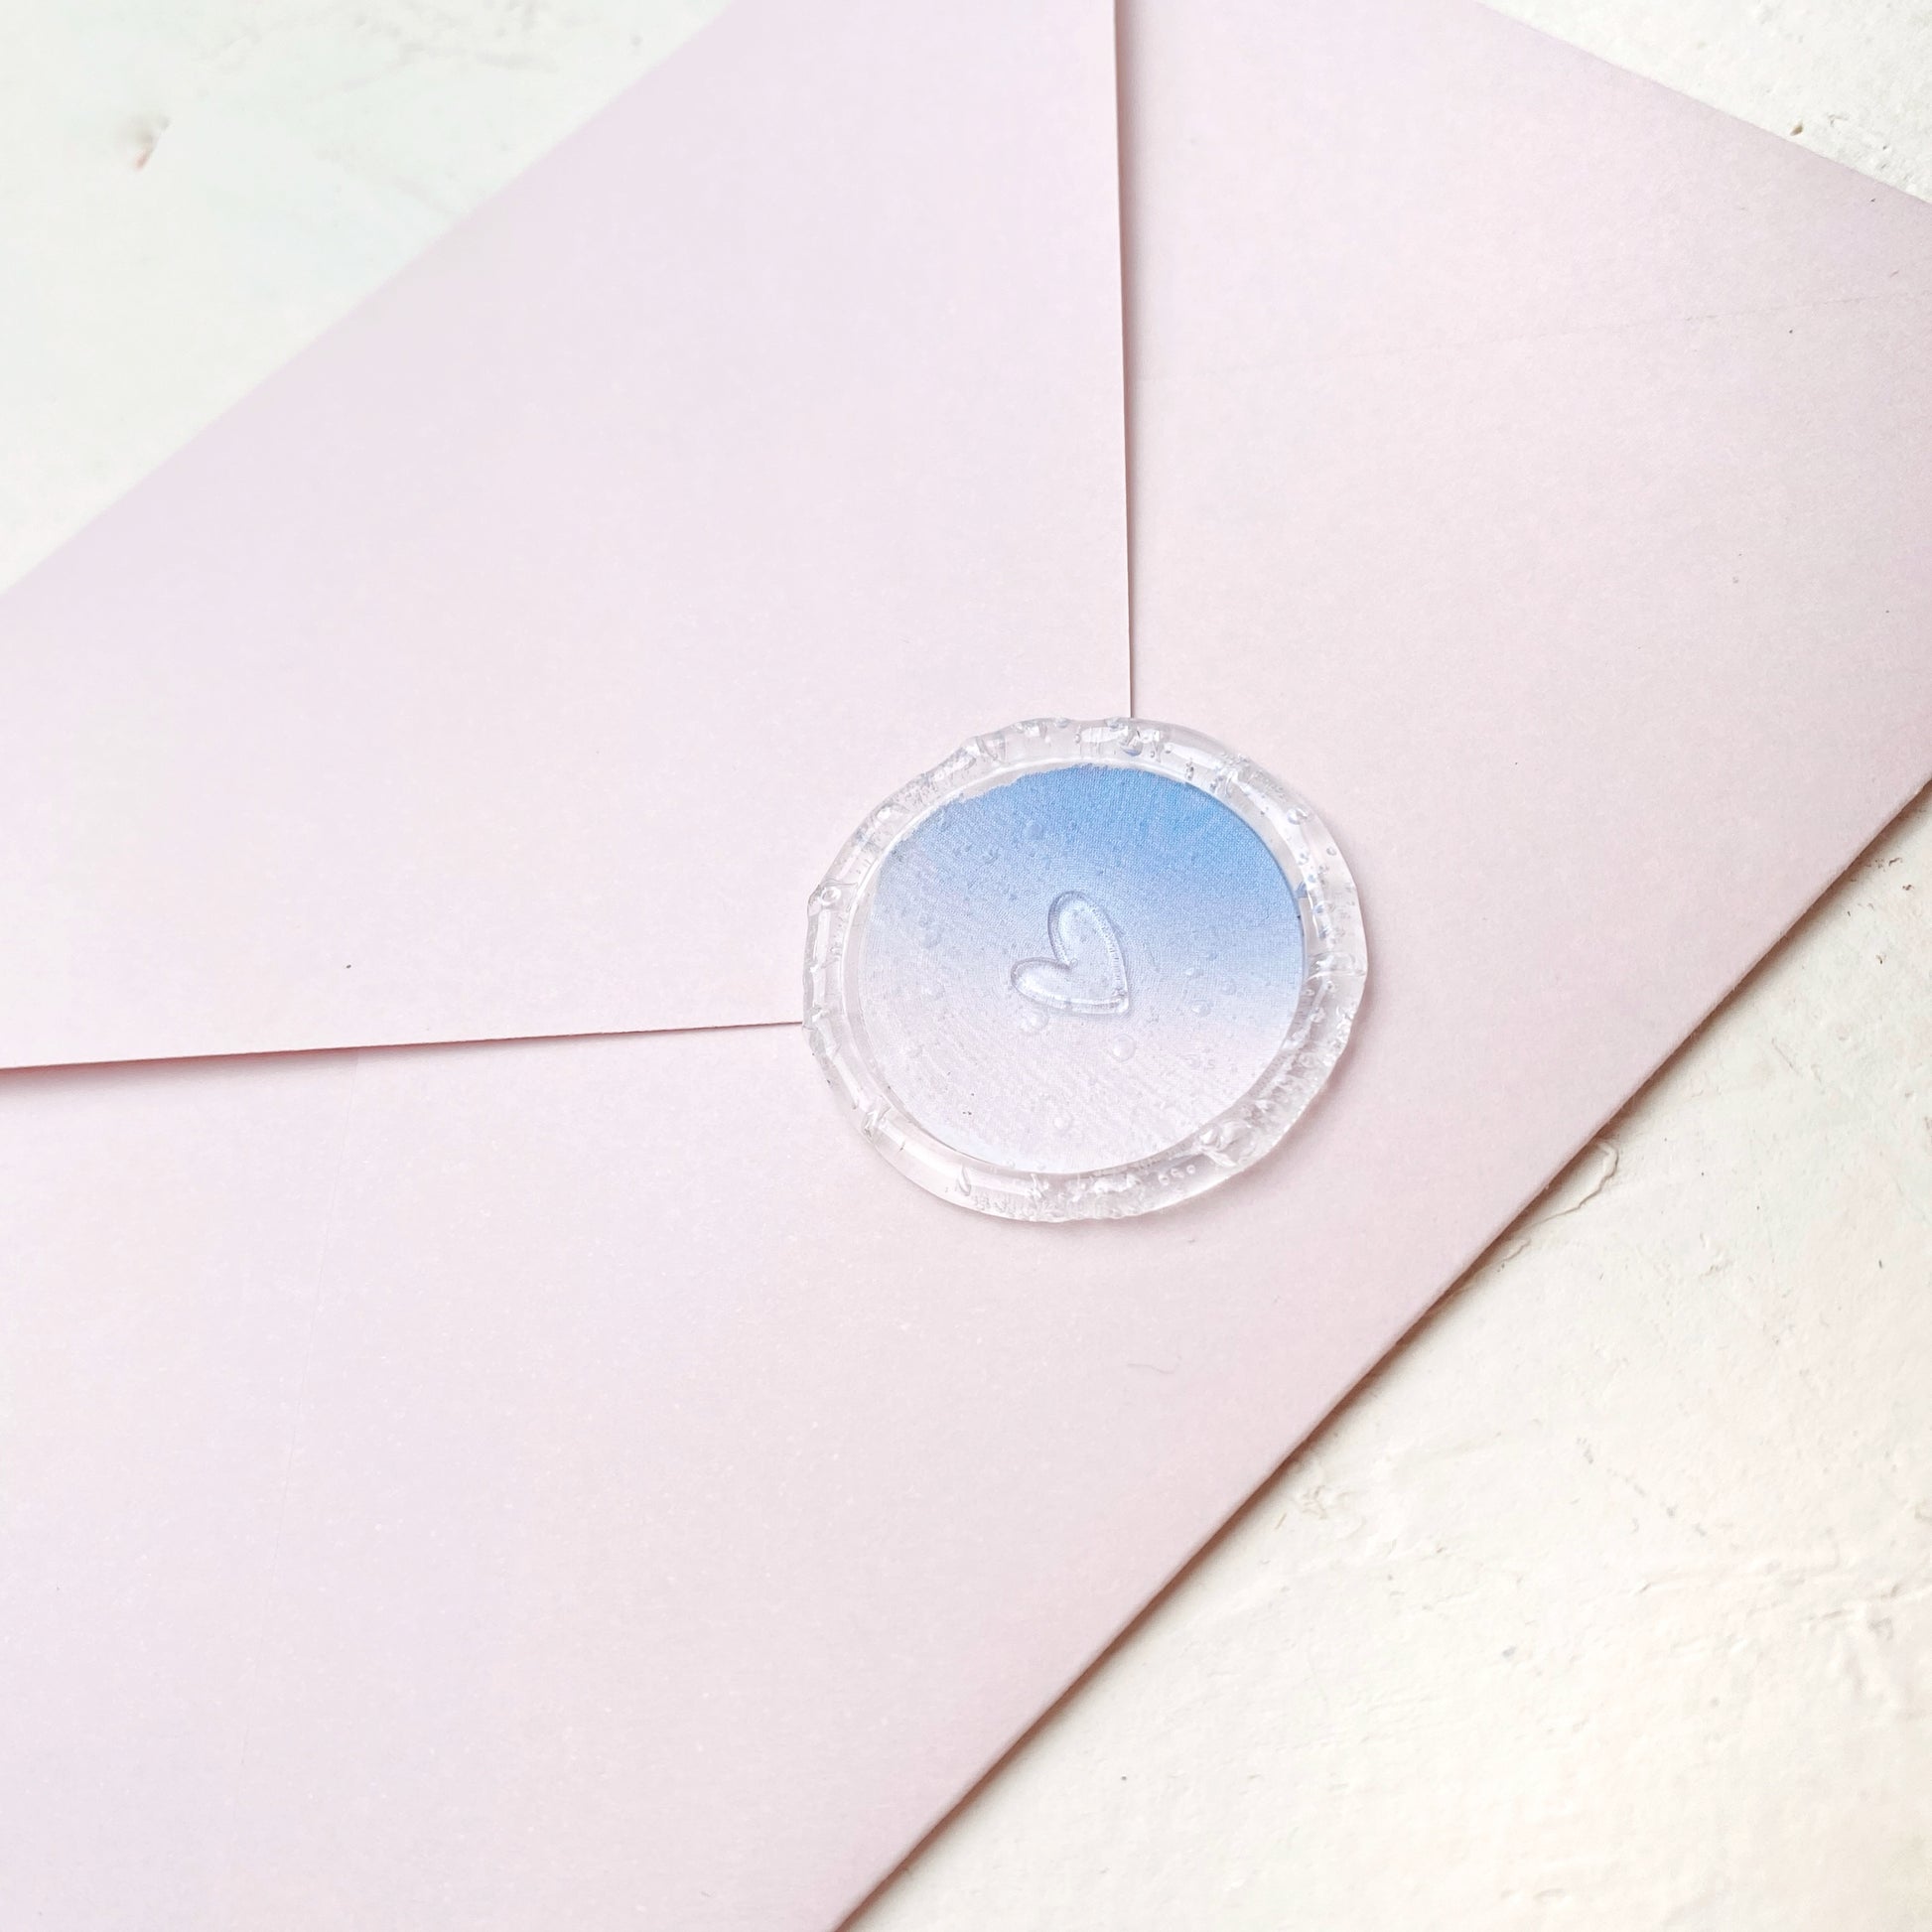 Hotová pečeť na svatební oznámení Srdíčko plné s modro růžovým podkladem na růžové obálce detail z profilu